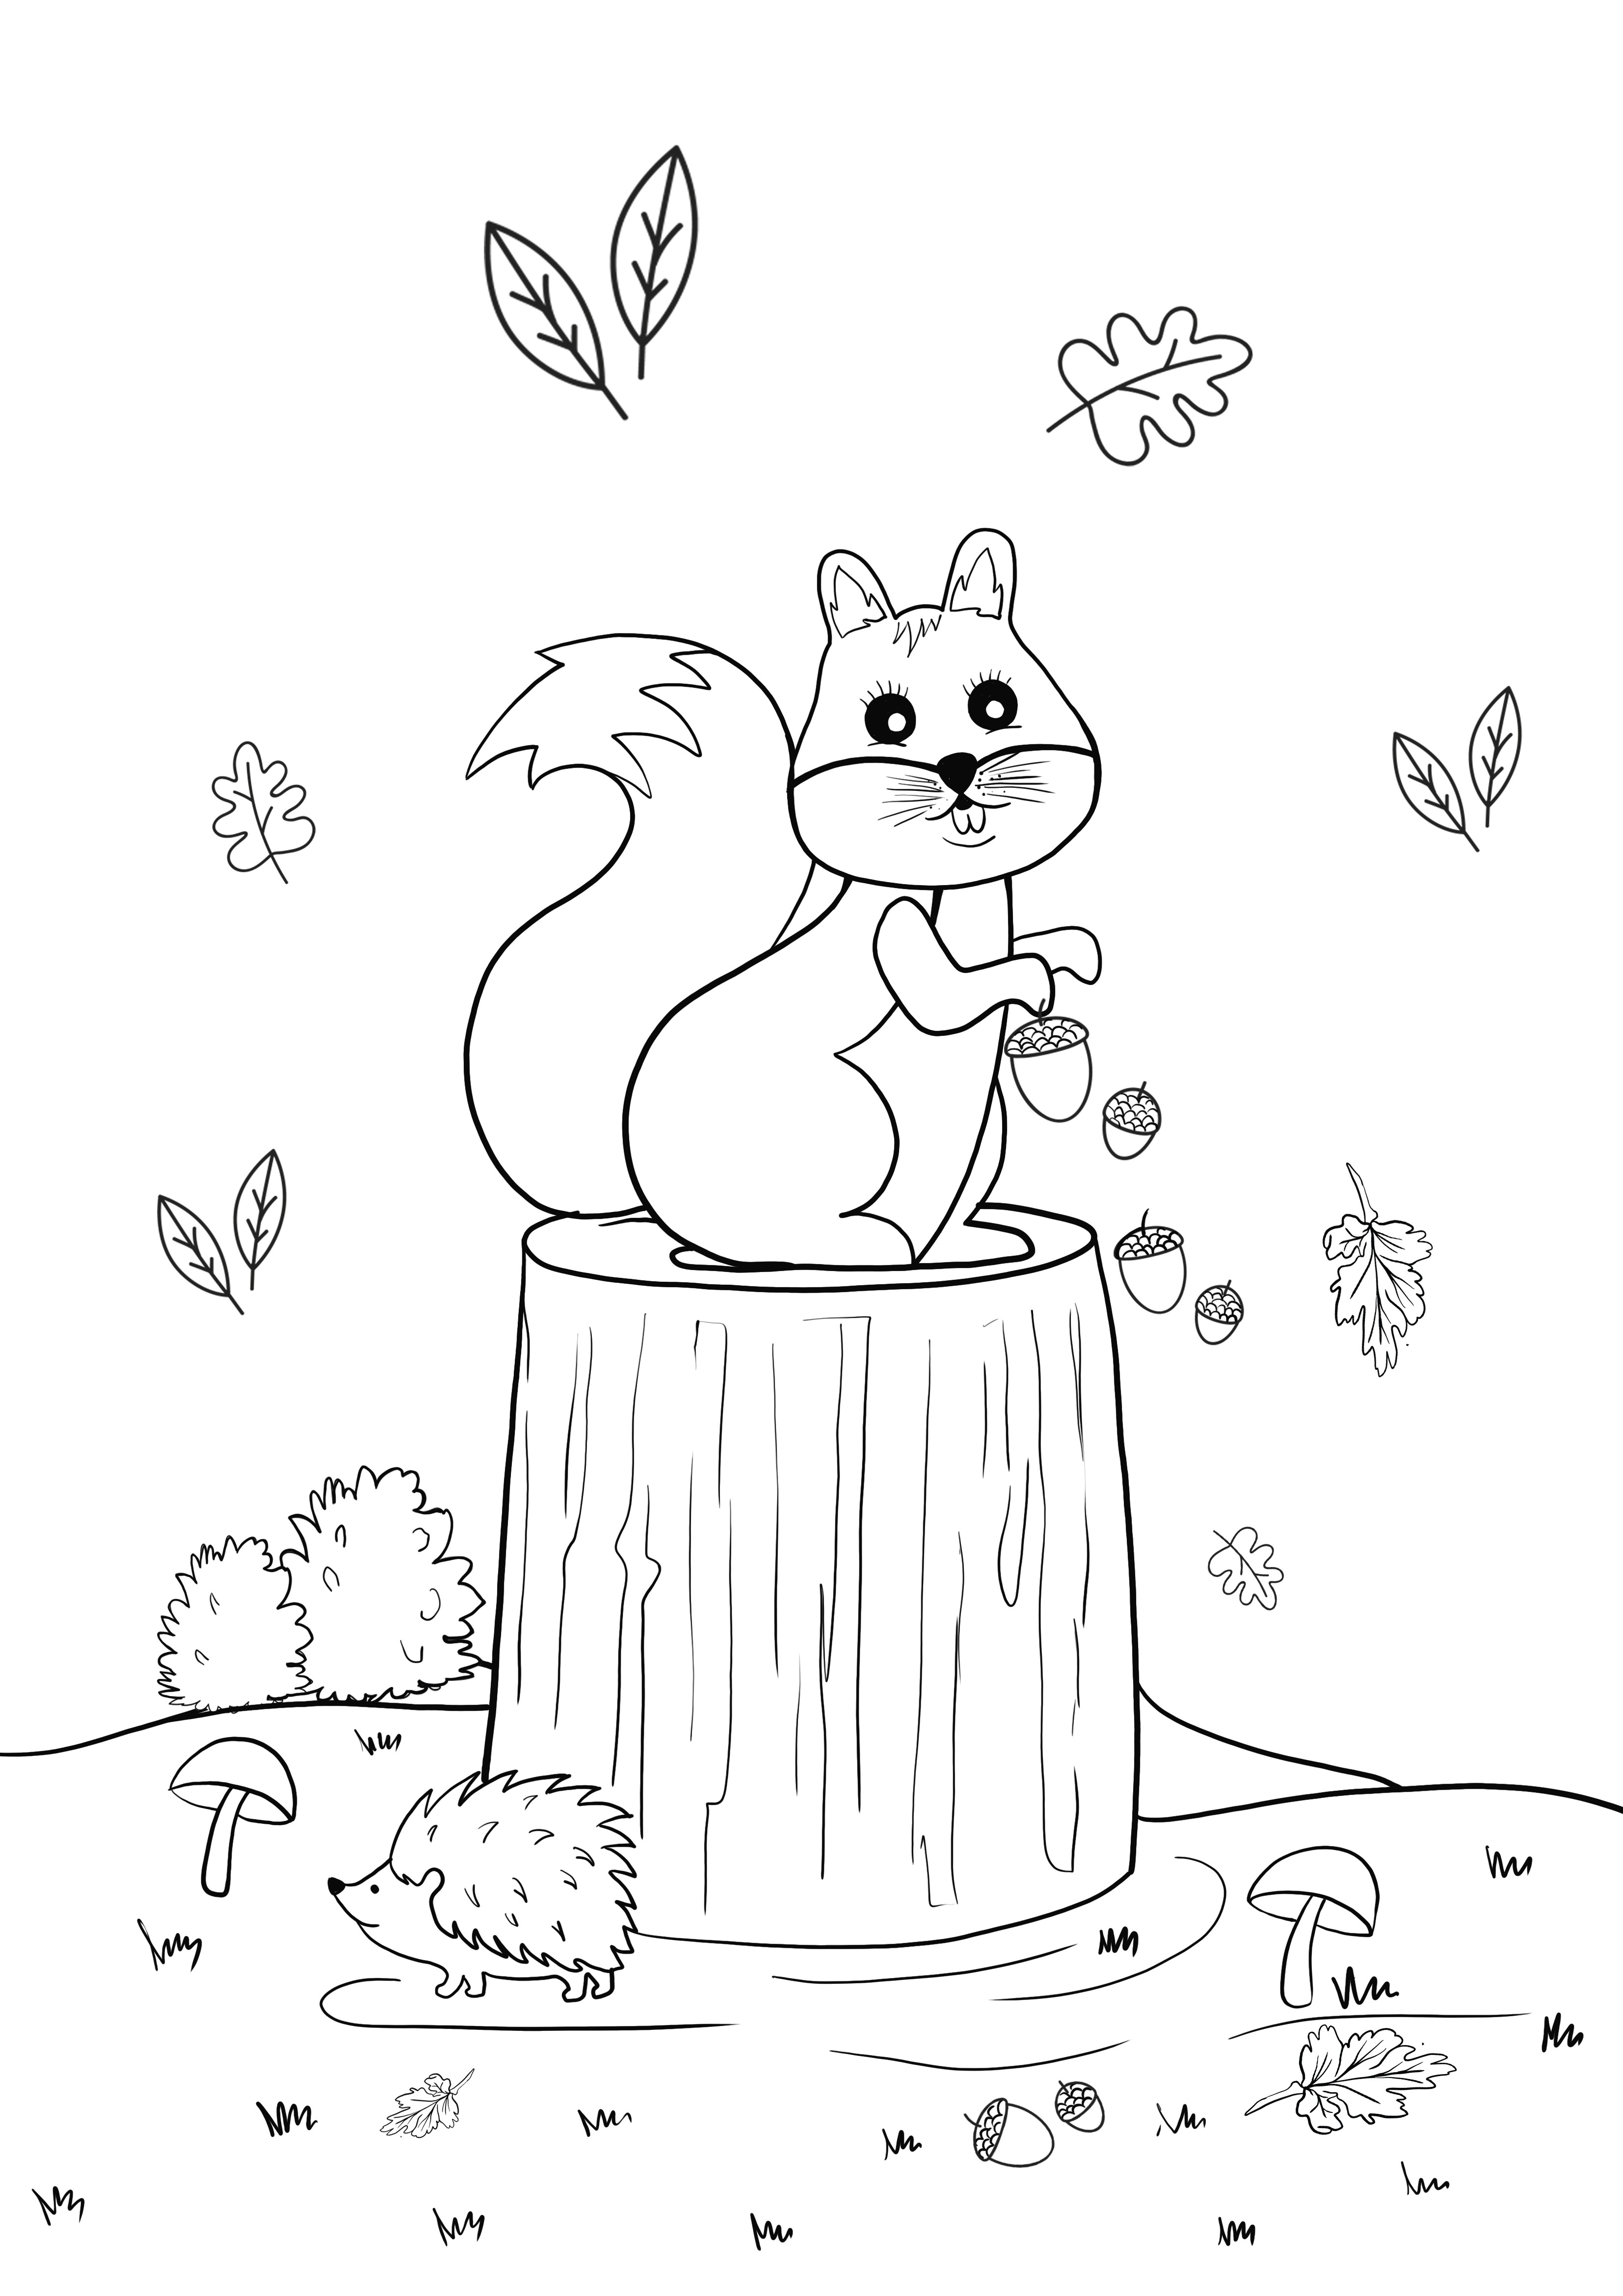  esquilo em um log para colorir e imprimir de graça